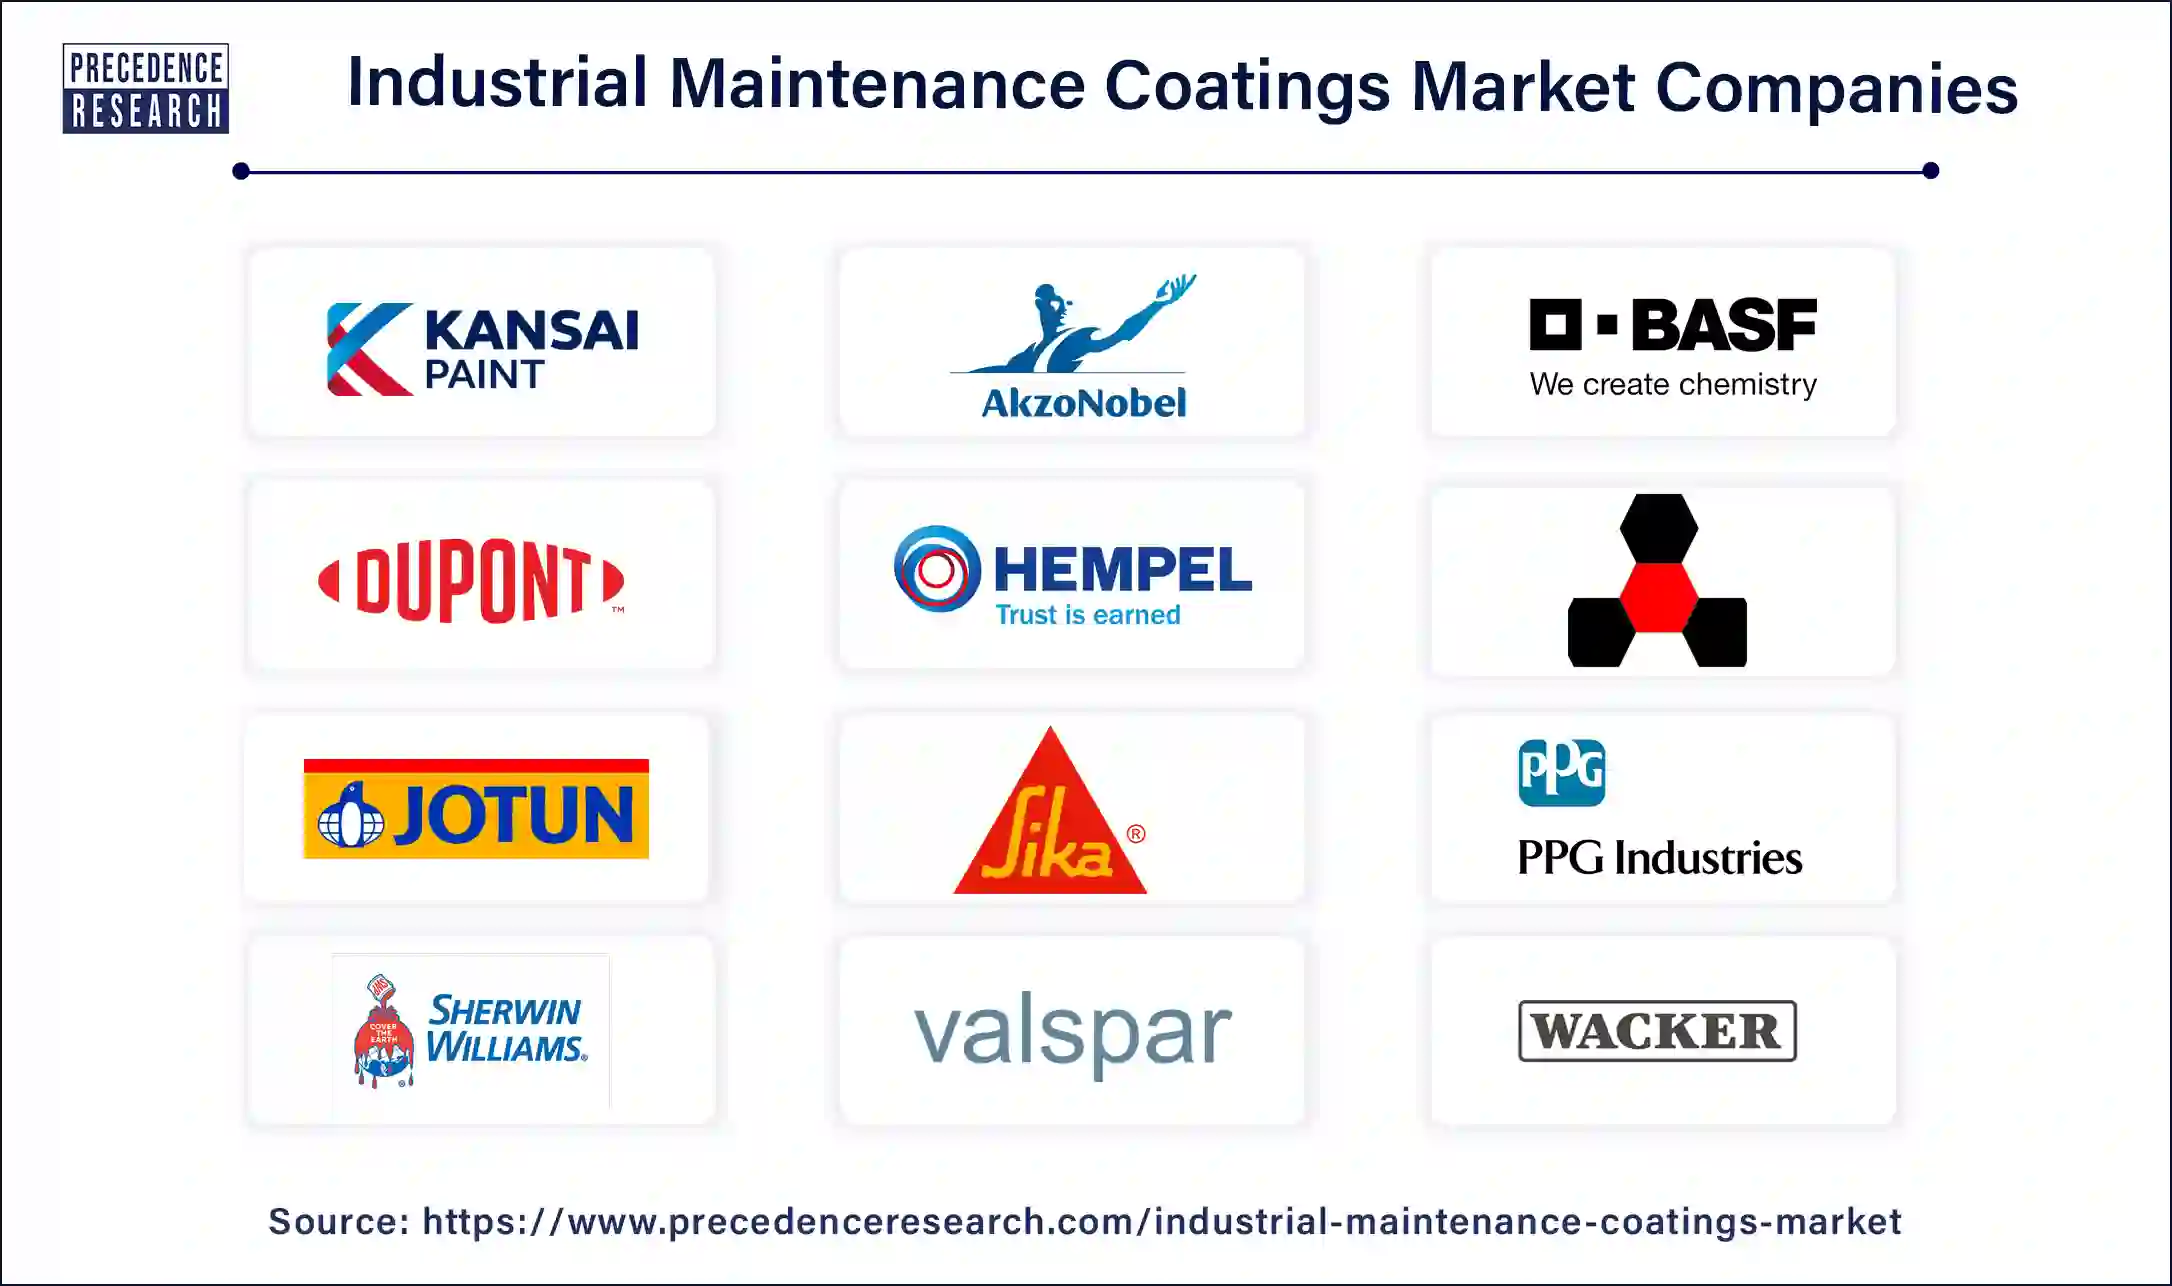 Industrial Maintenance Coatings Companies